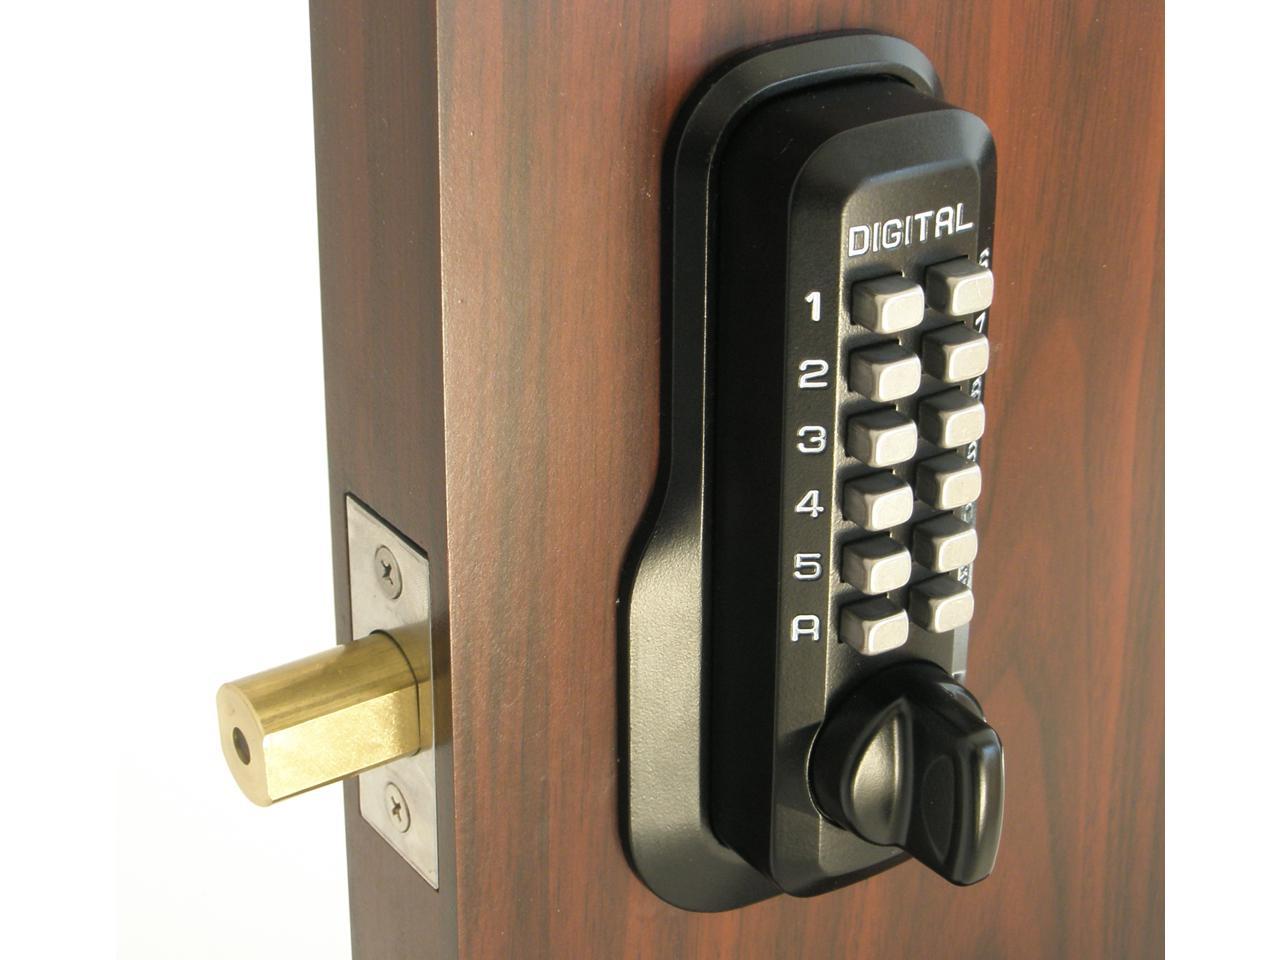 Дверь шлюза. Deadbolt замок. Boss Lock двери. Шлюз дверь. Digital Door Lock.